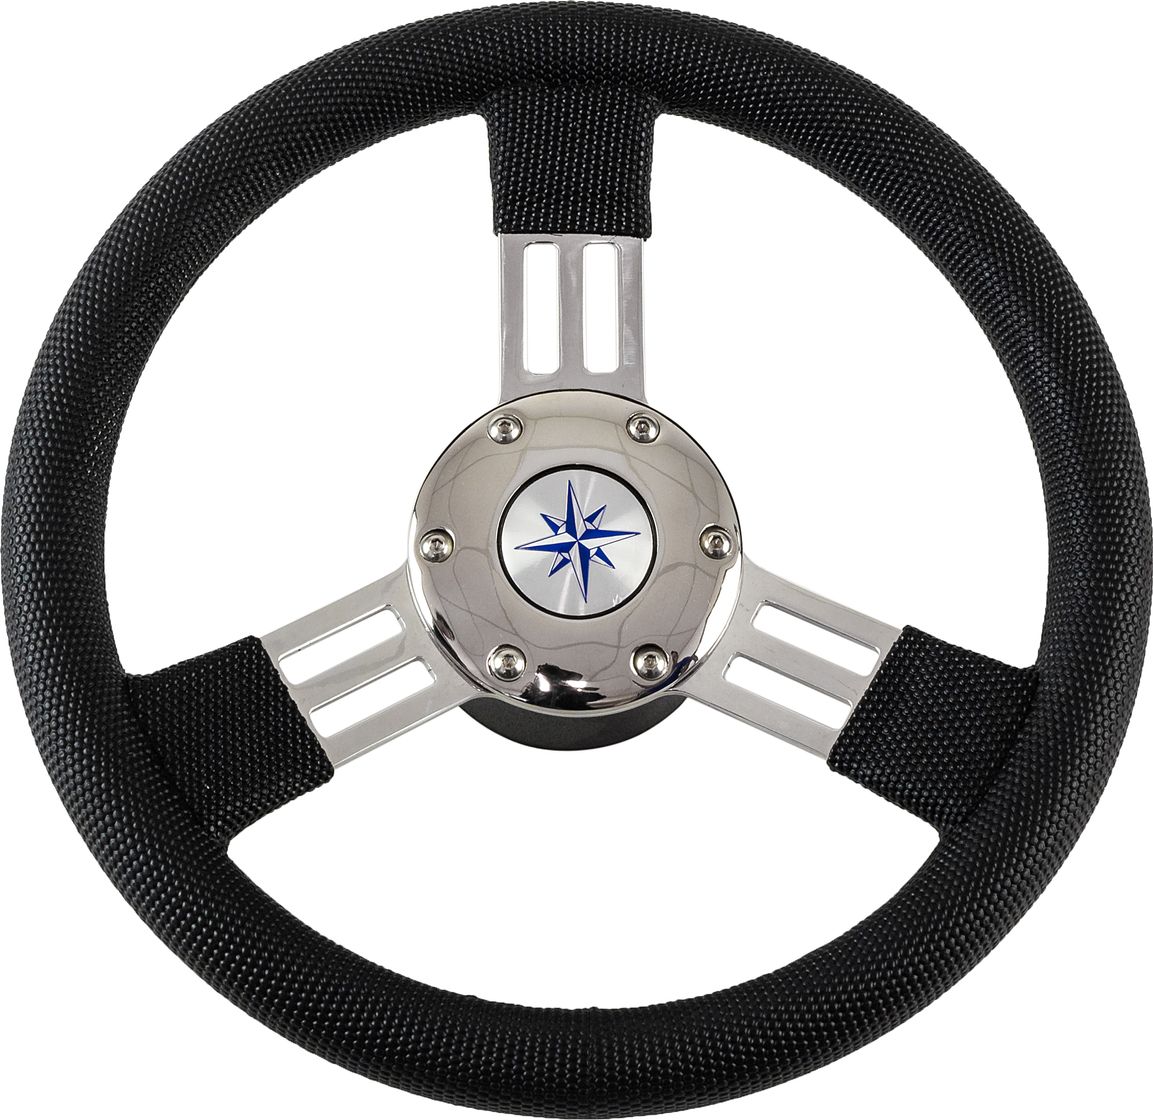 Рулевое колесо PEGASO обод черный, спицы серебряные д. 300 мм VN13327-01 рулевое колесо elba sport обод спицы серебряные д 320 мм vn13321 01